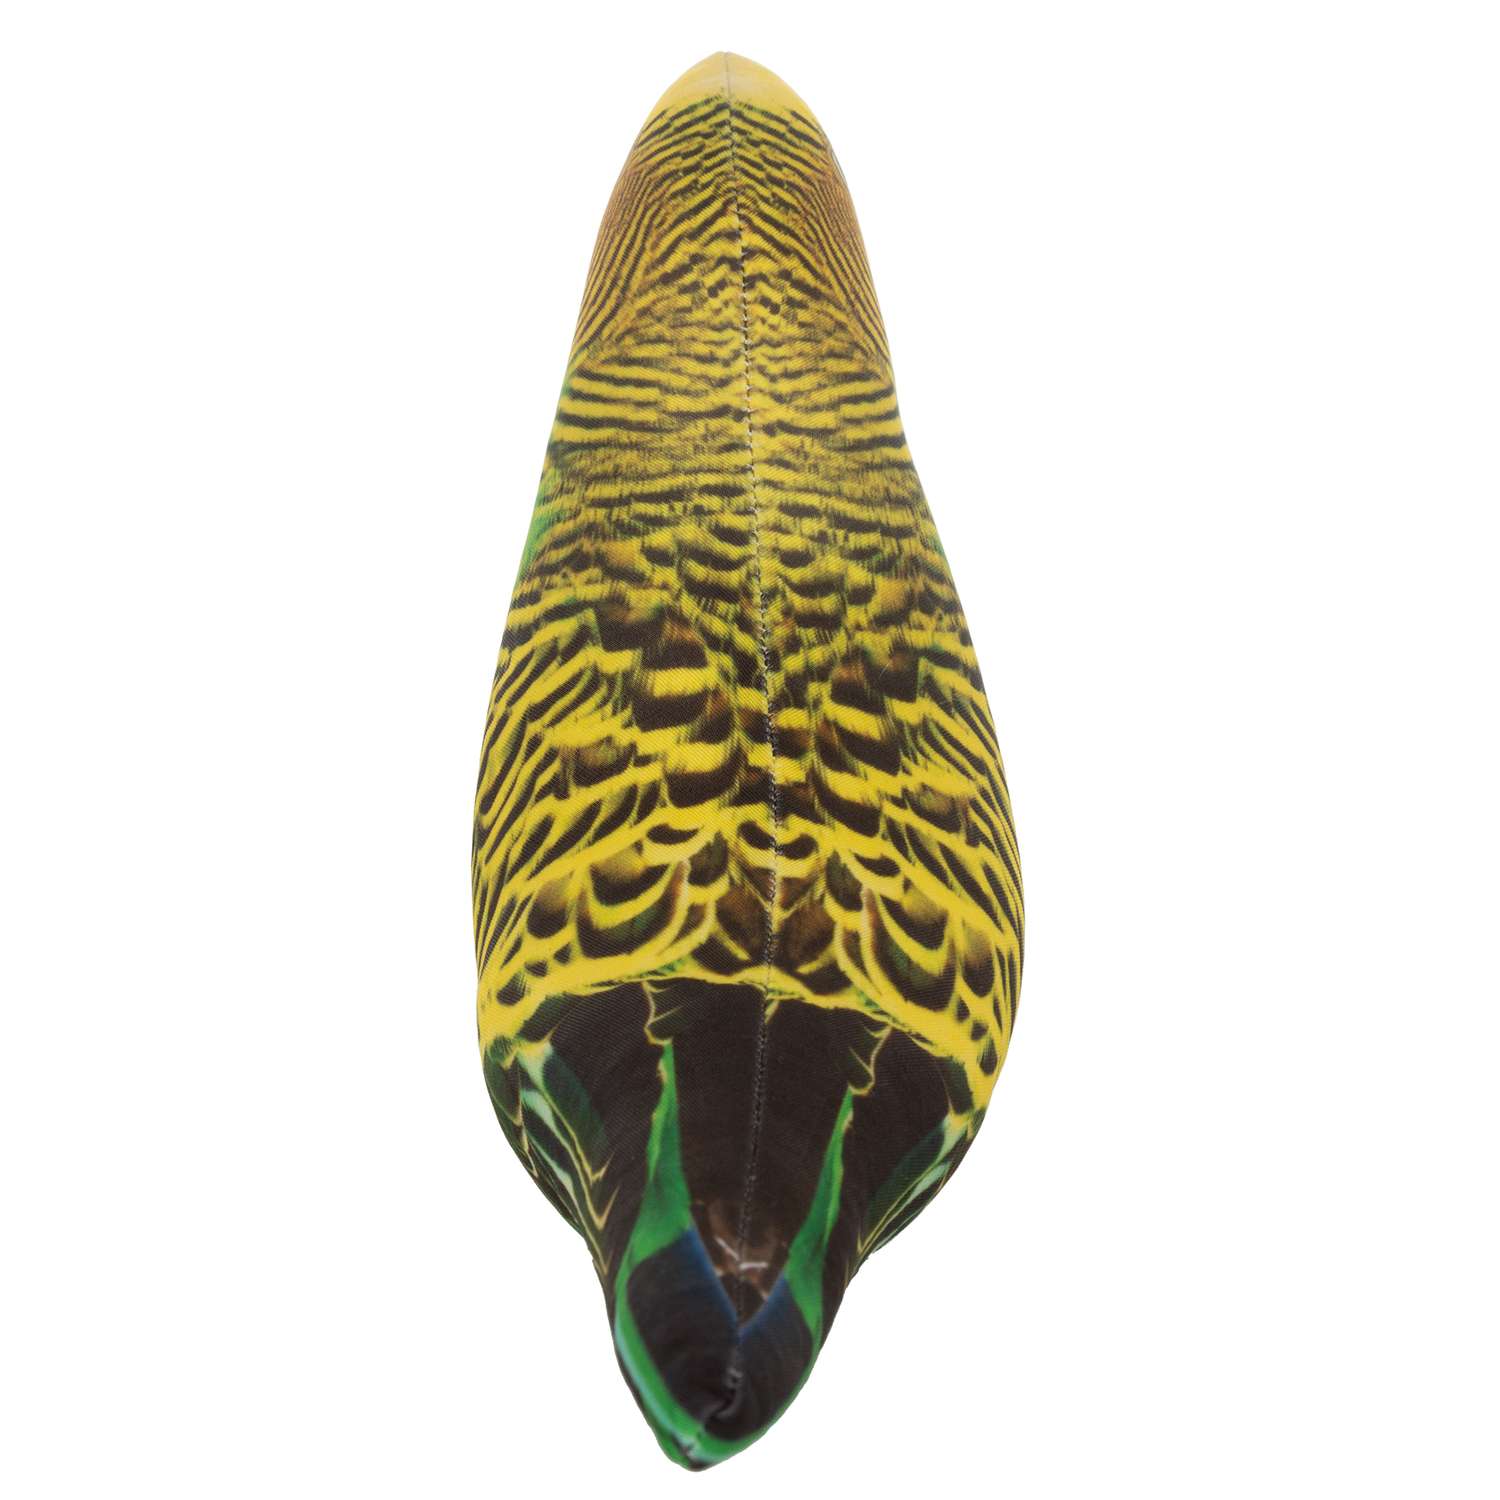 Игрушка мягконабивная Tallula Попугай волнистый Зеленый 28МТ02s - фото 4